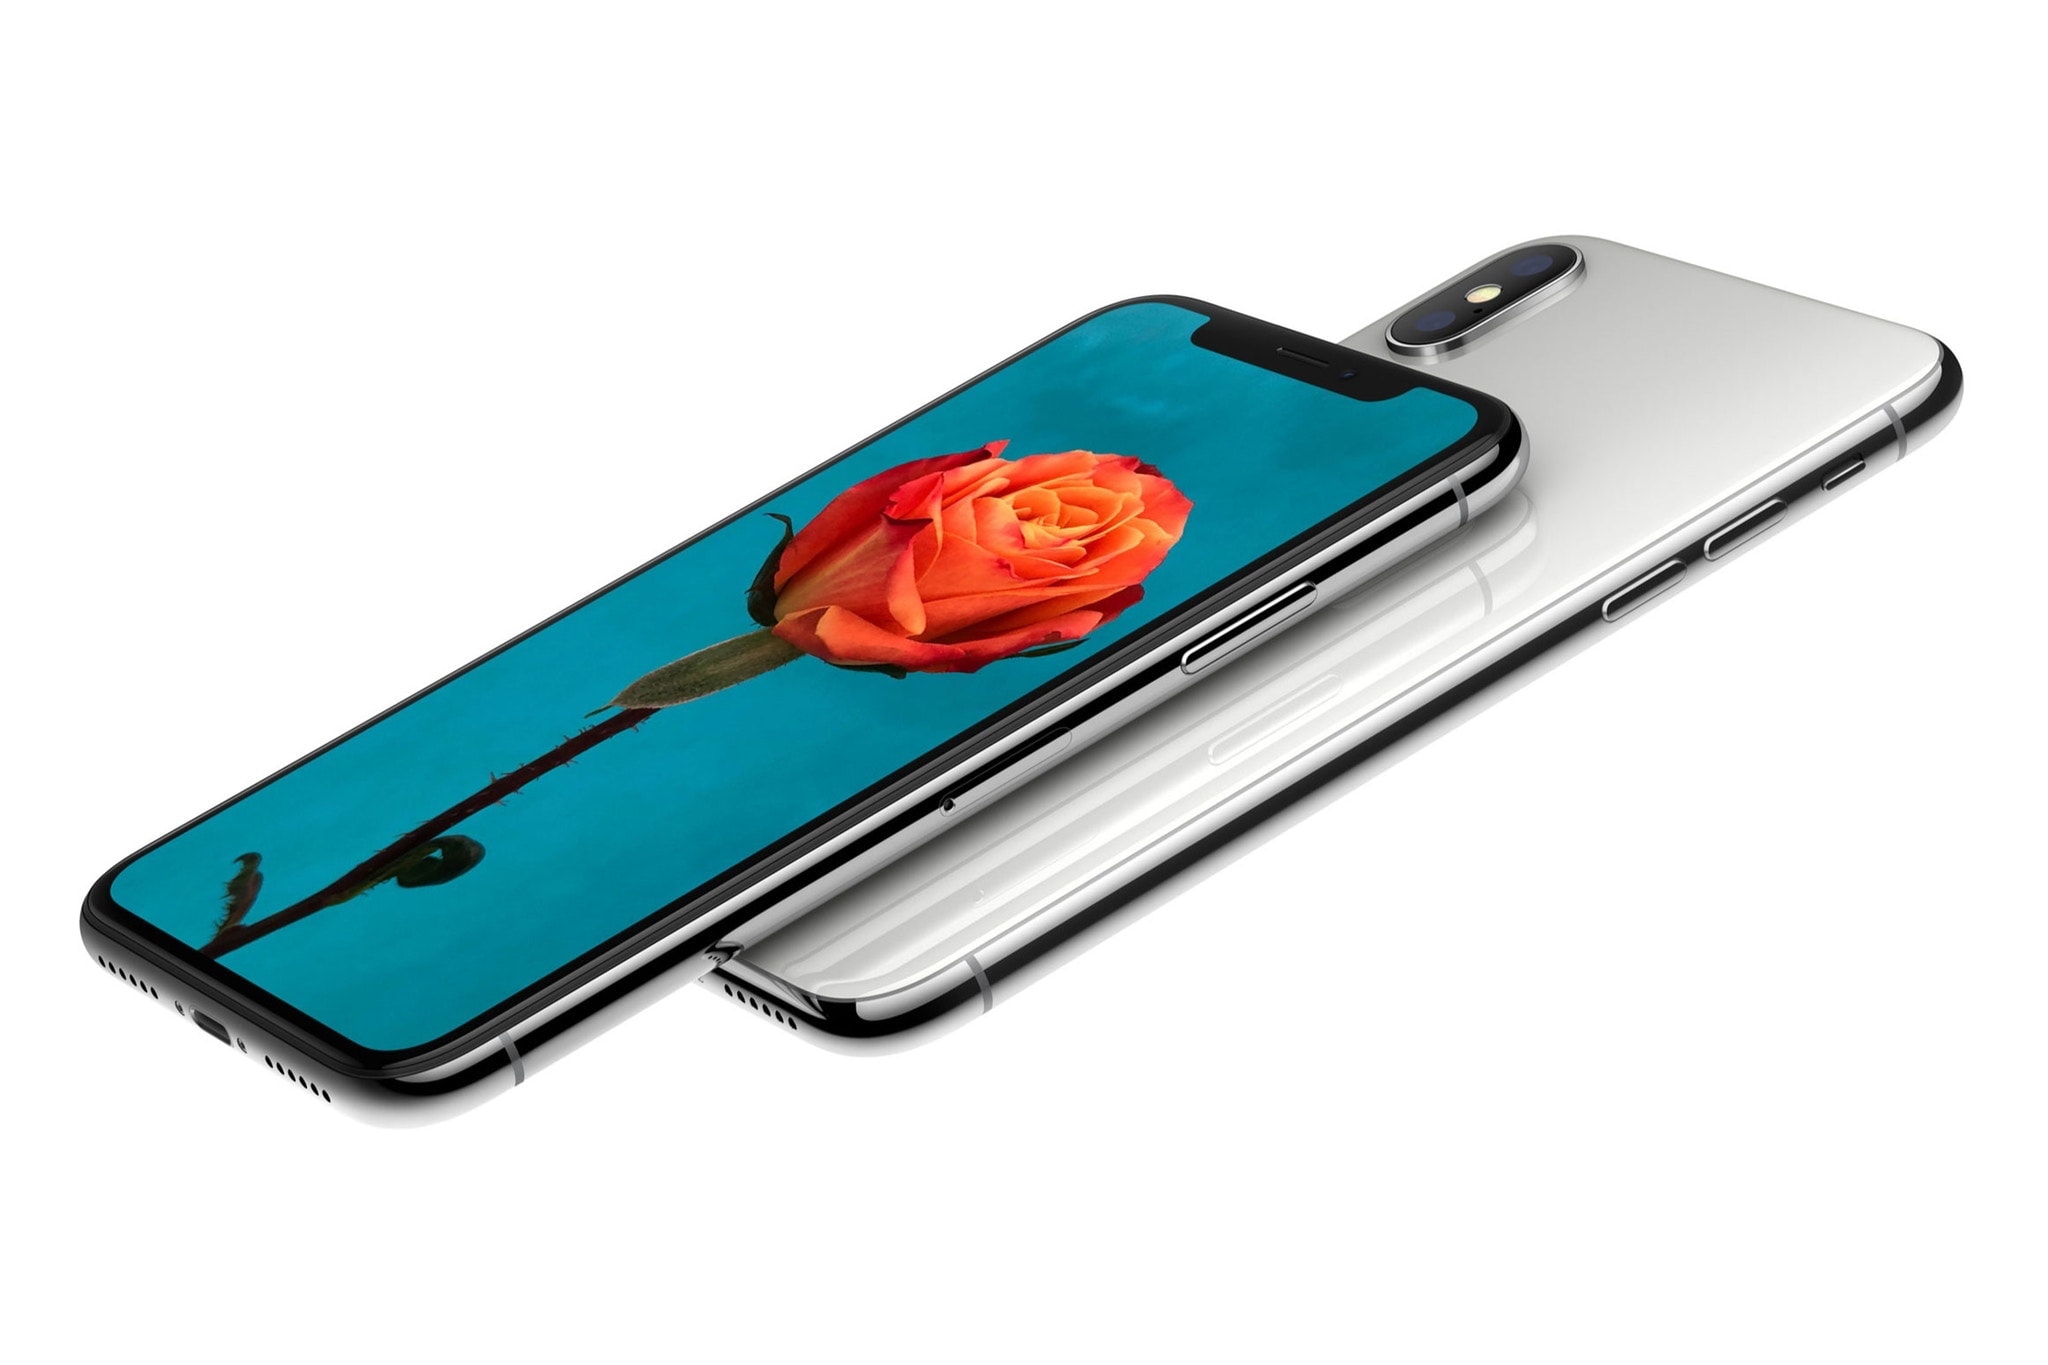 iPhone X Nouveauté Nouveau Mobile Mobile Application Steve Jobs Apple 2018